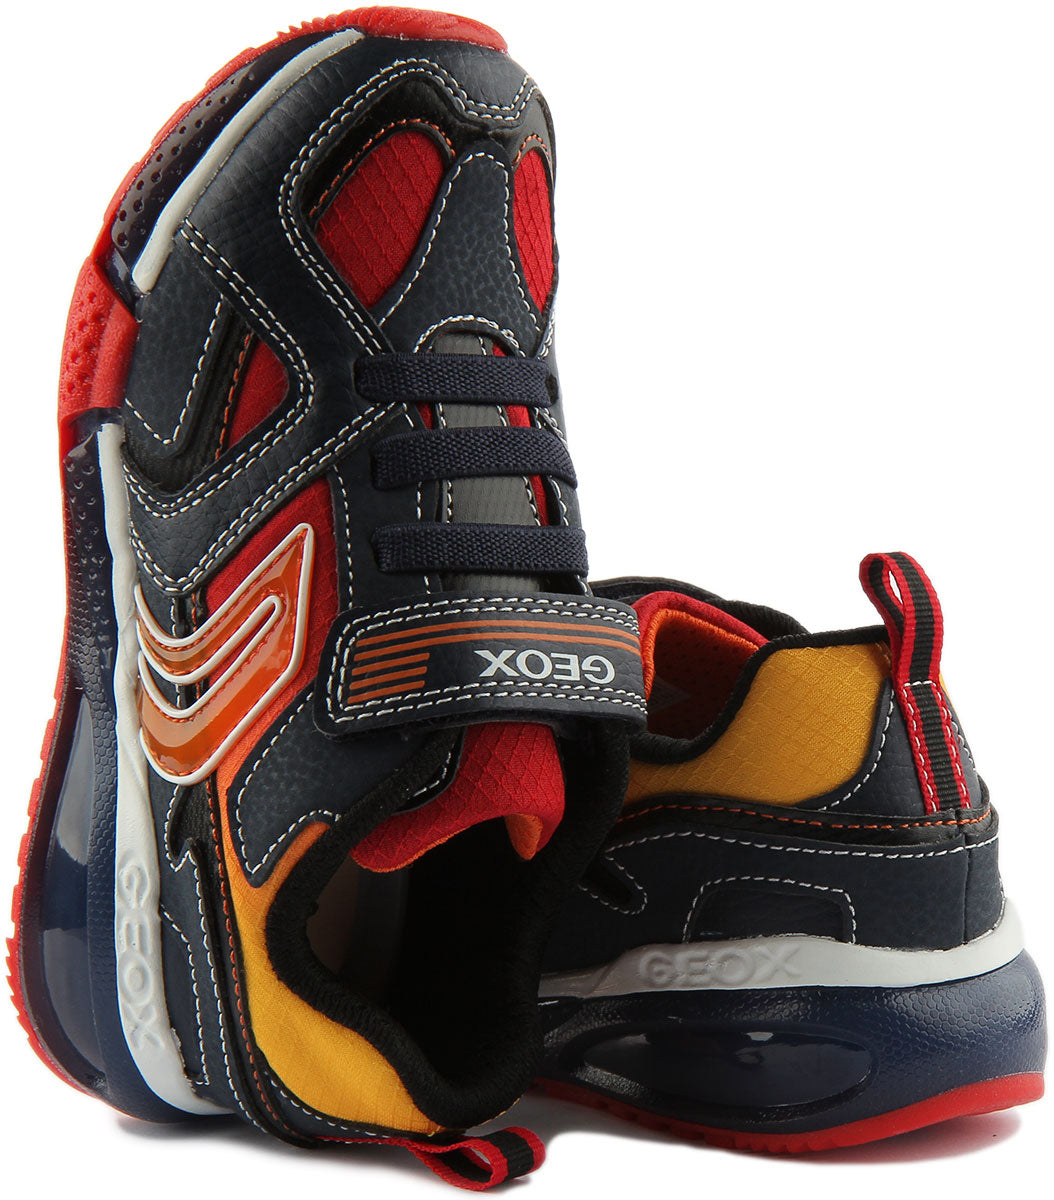 Geox J Bayonyc Zapatillas deportivas sintéticas de una sola tira para niños en rojo marino